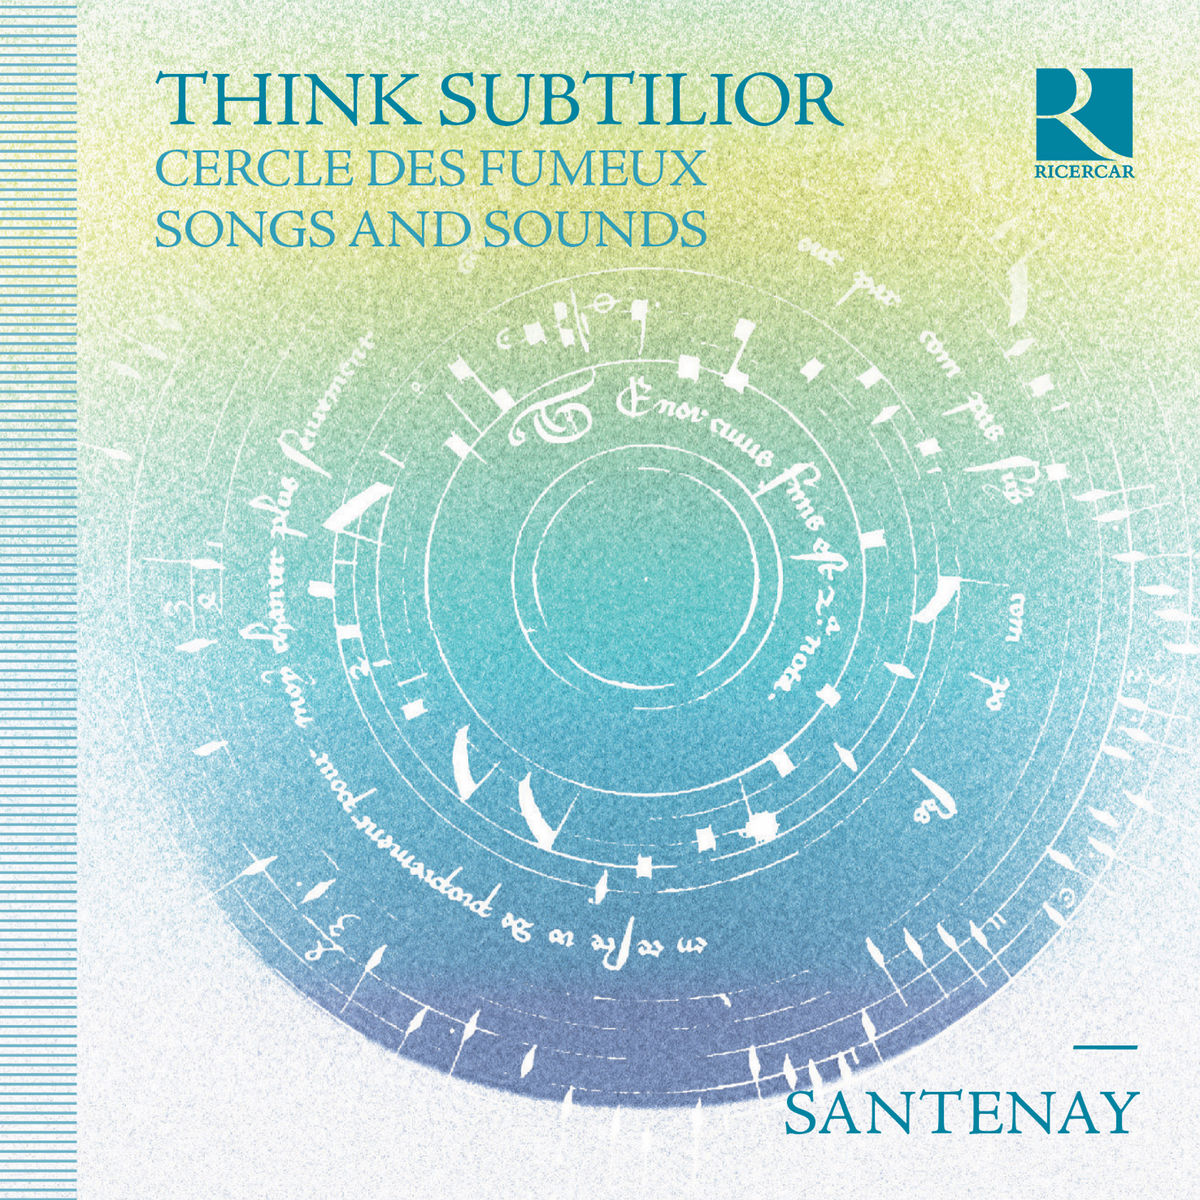 Santenay - Think Subtilior (Cercle des fumeux & Songs and Sounds) (2017) [Qobuz FLAC 24bit/48kHz]